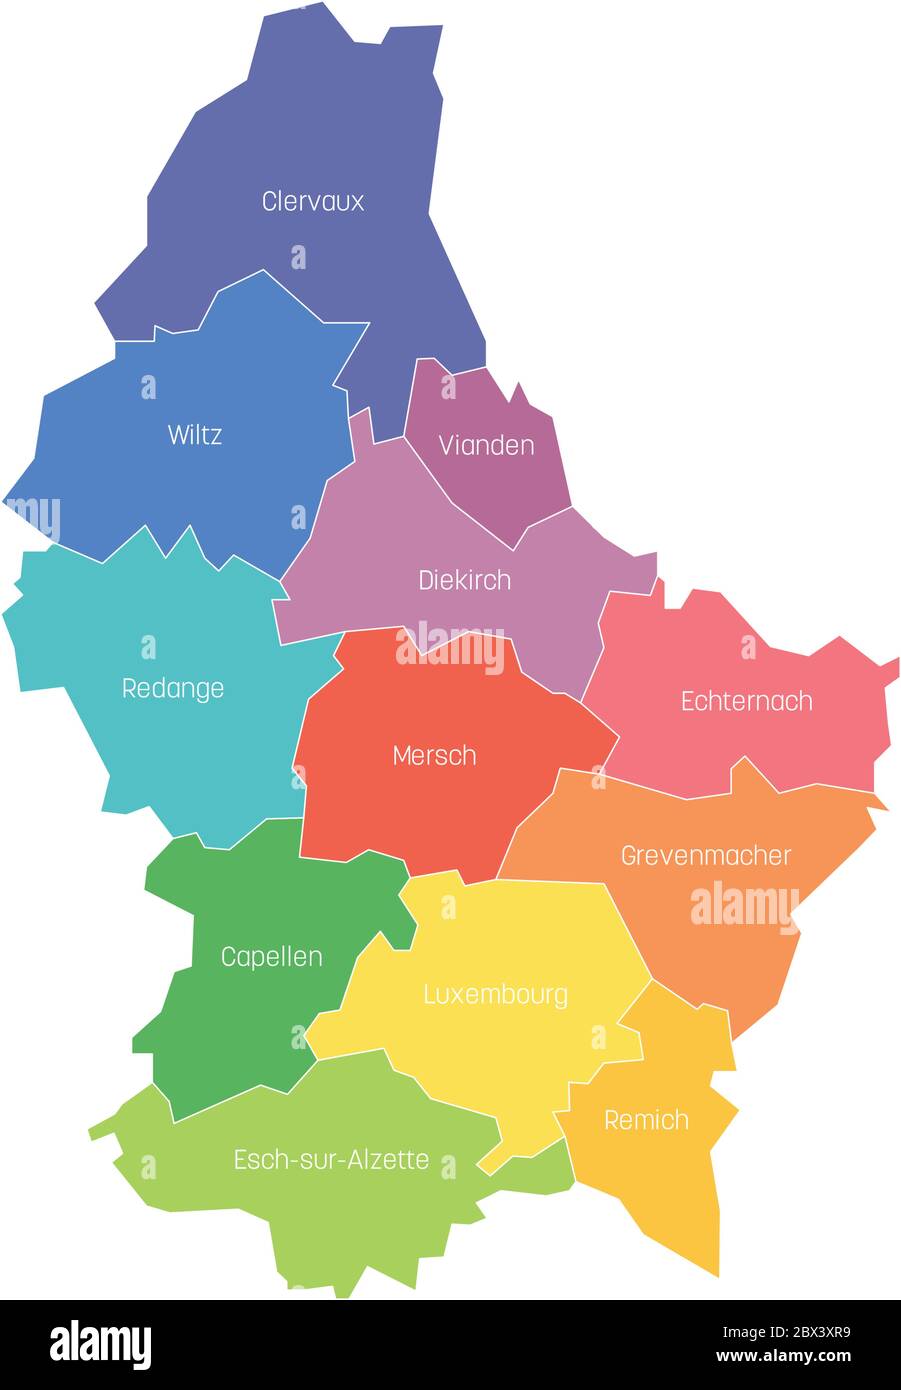 Lussemburgo cartina immagini e fotografie stock ad alta risoluzione - Alamy